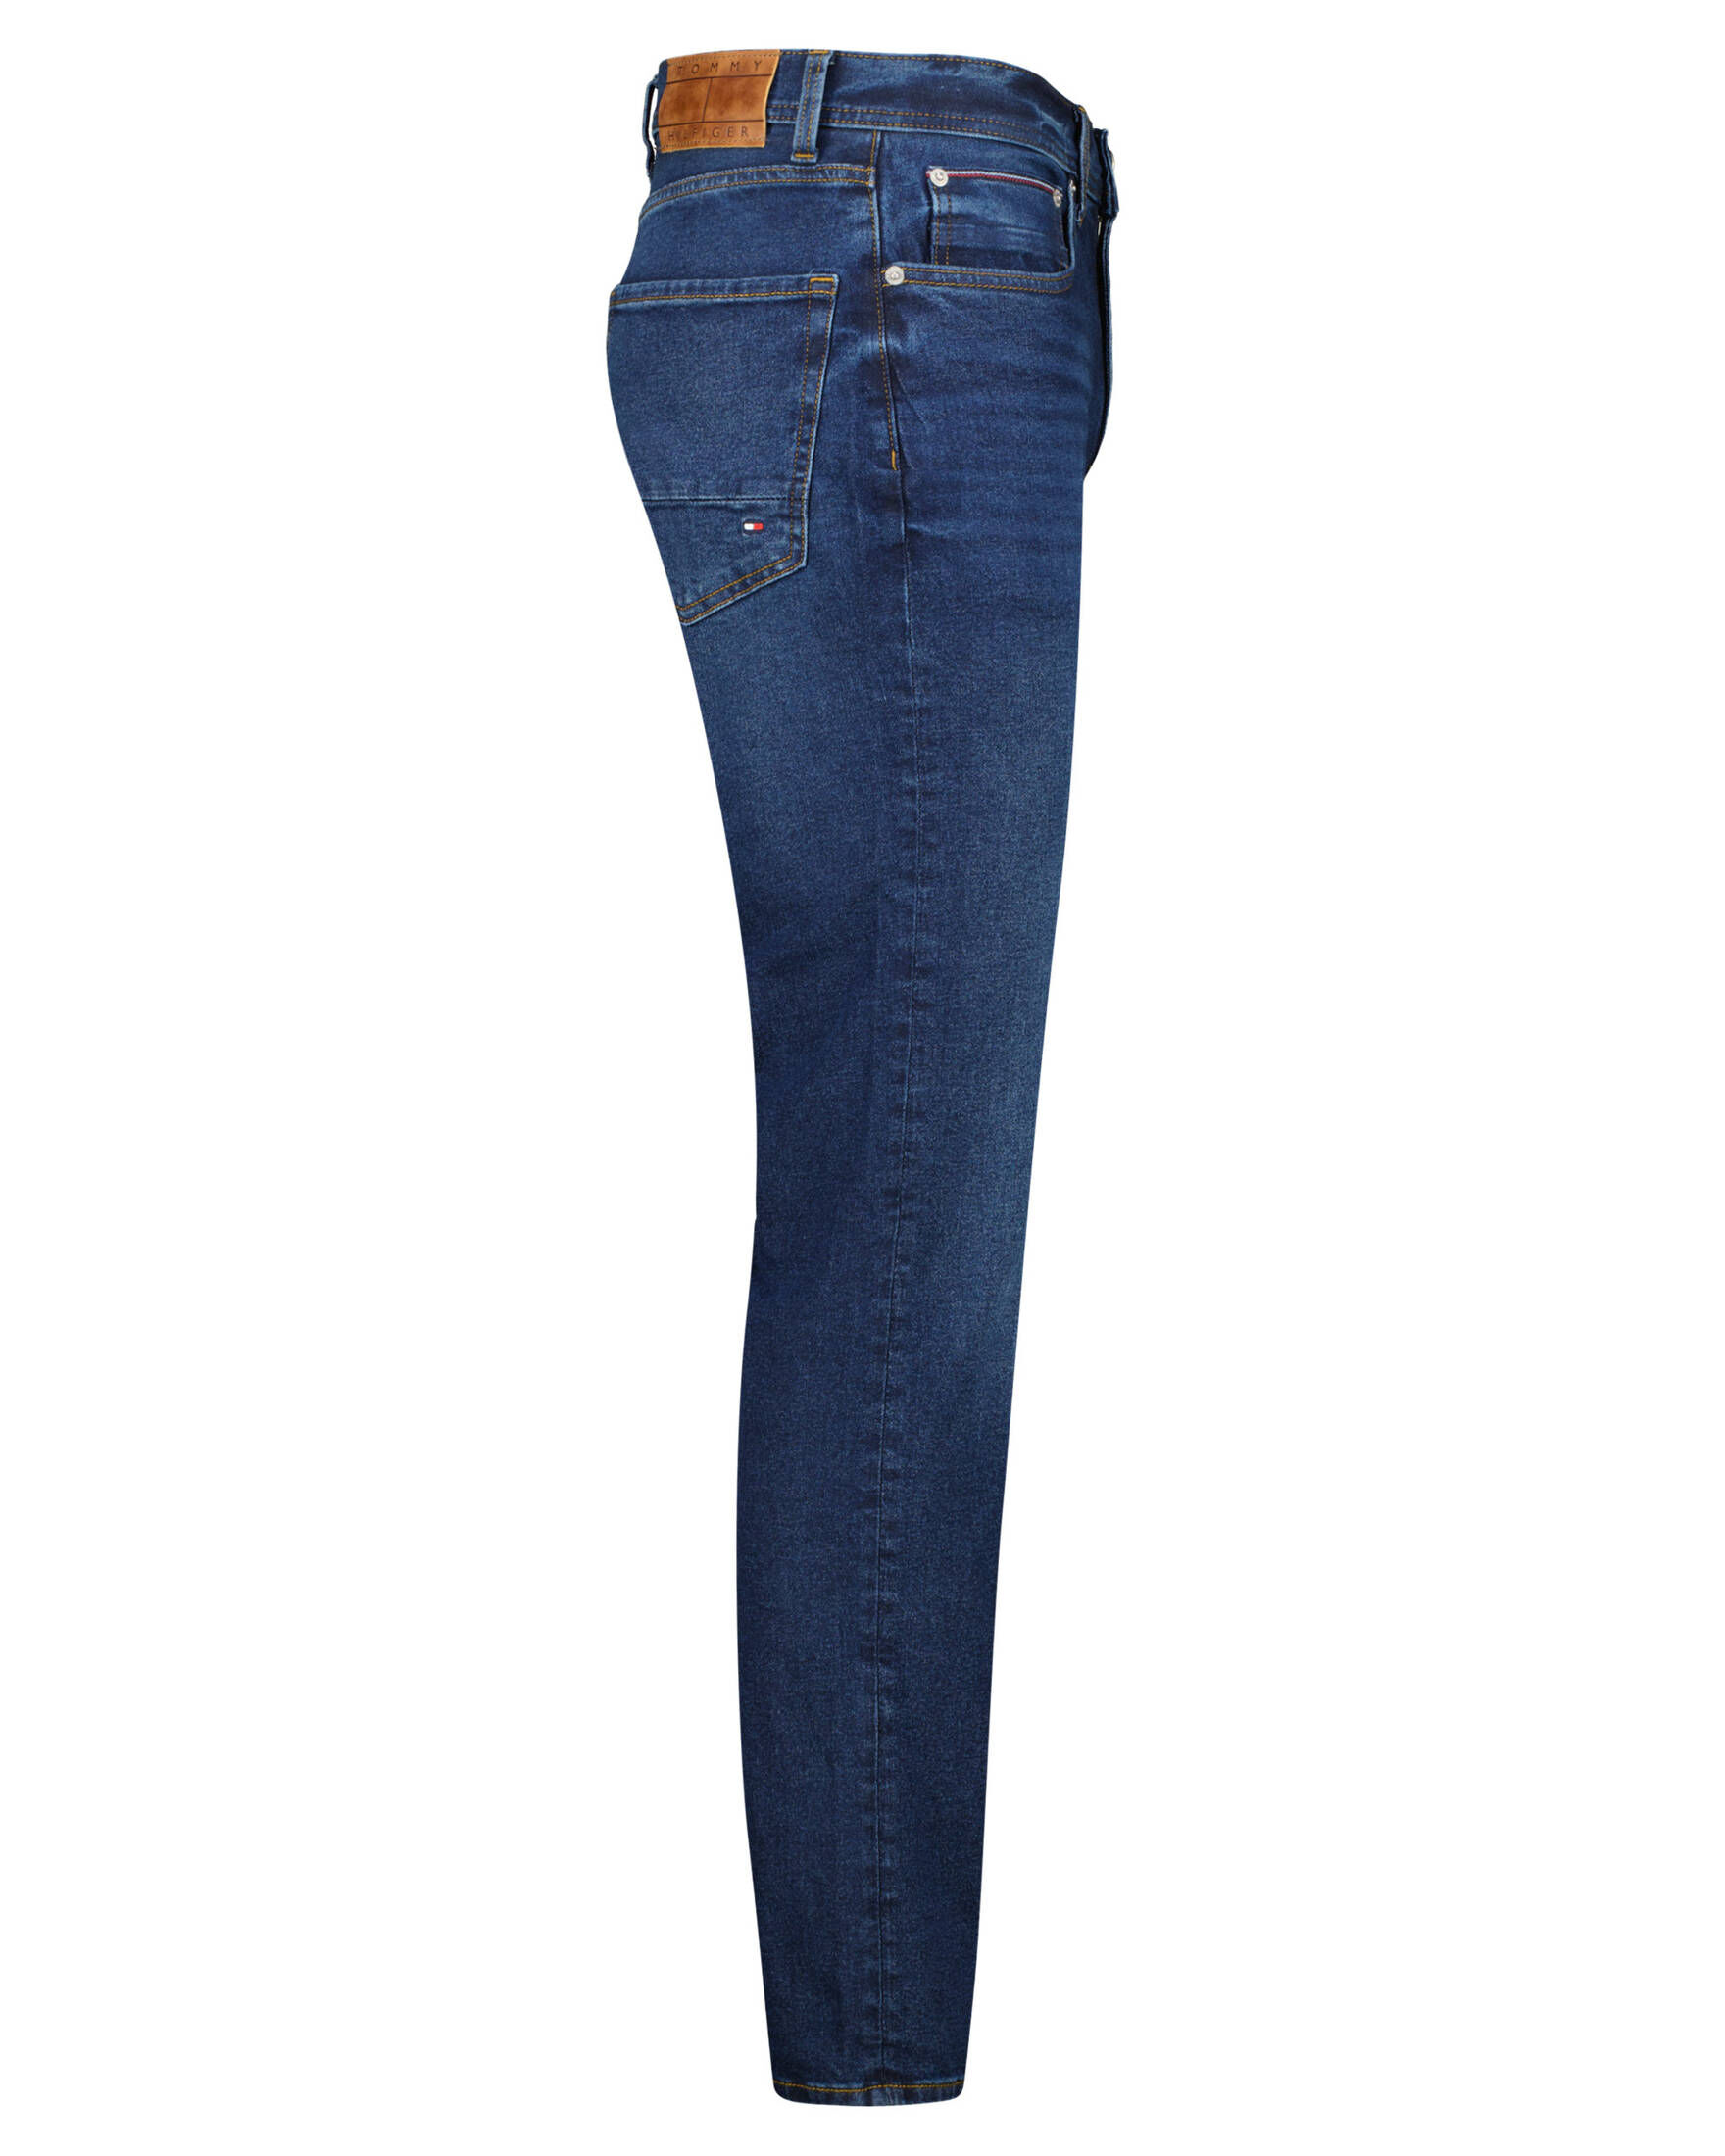 Straight STERNE Jeans Herren STR kaufen Fit Tommy DENTON Hilfiger | TH engelhorn